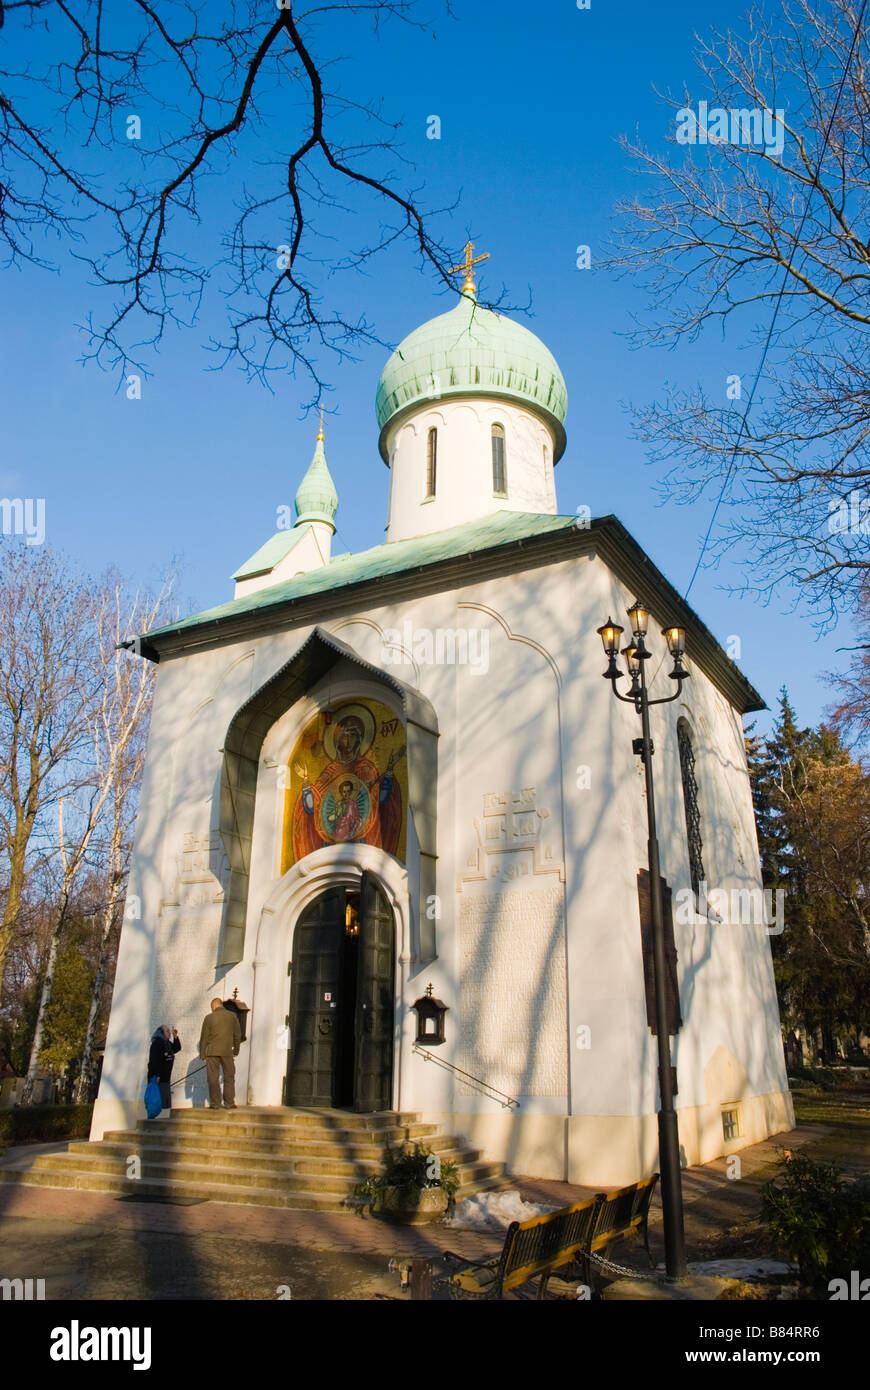 Kaple Blahoslavene Bohoradice orthodoxe Kapelle am Vojensky Hrbitov dem Soldatenfriedhof in Stadtteil Zizkov in Prag Stockfoto